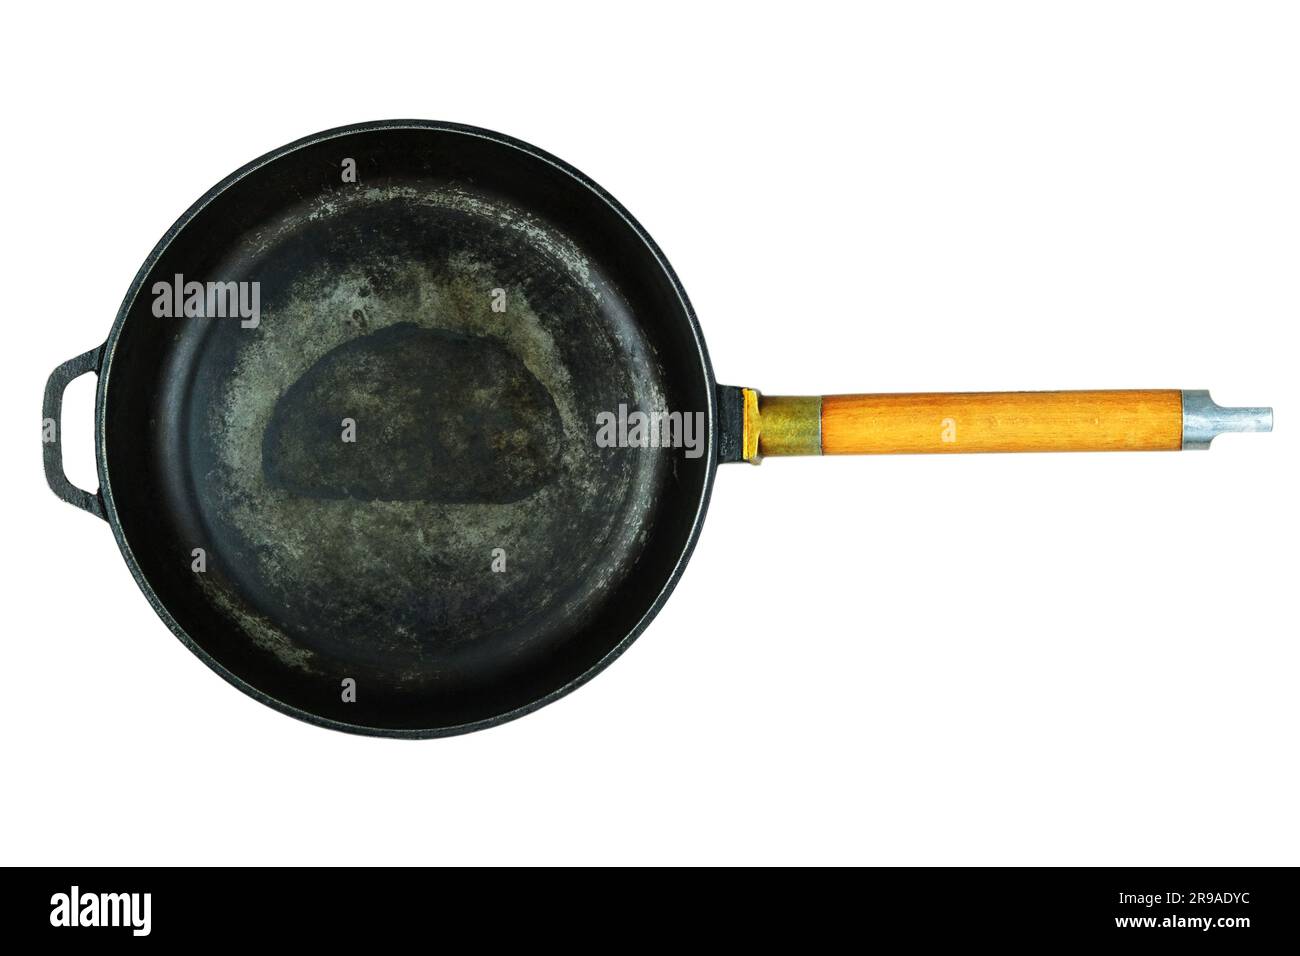 Gusseisenwanne. Pan wurde verwendet. Kochgeschirr isoliert auf weißem Hintergrund. Draufsicht. Stockfoto